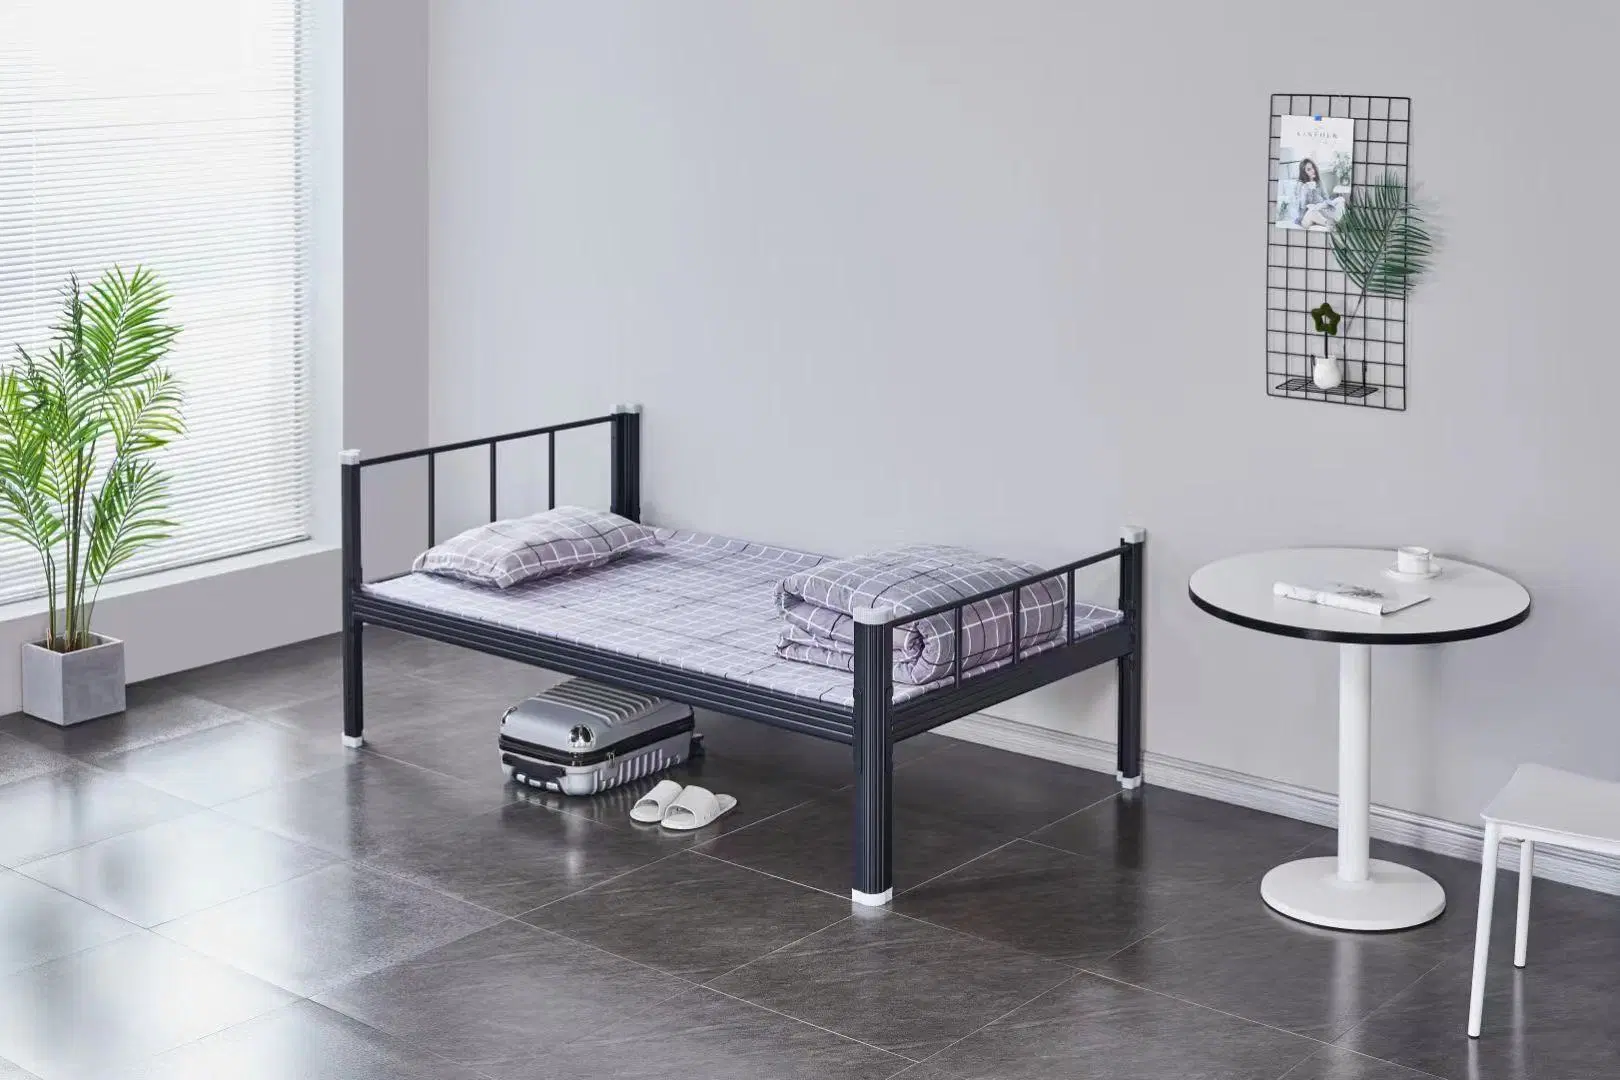 غرفة نوم معدنية حديثة متينة من نوع Bunk Bed من المعدن الأبيض